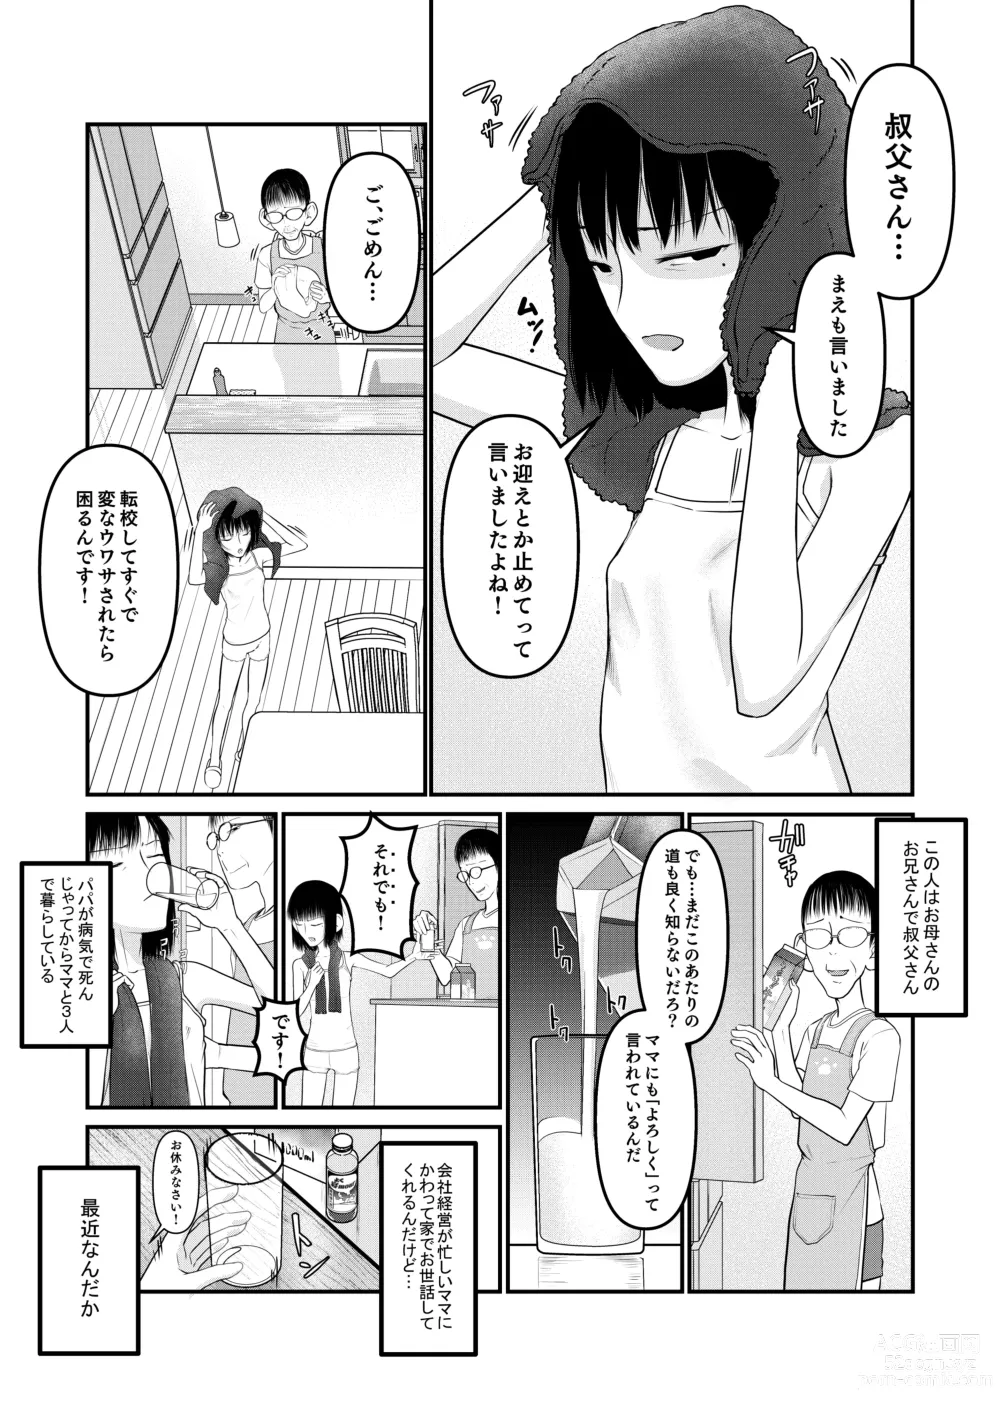 Page 5 of doujinshi Makoto-chan Himitsu no Otetsudai.